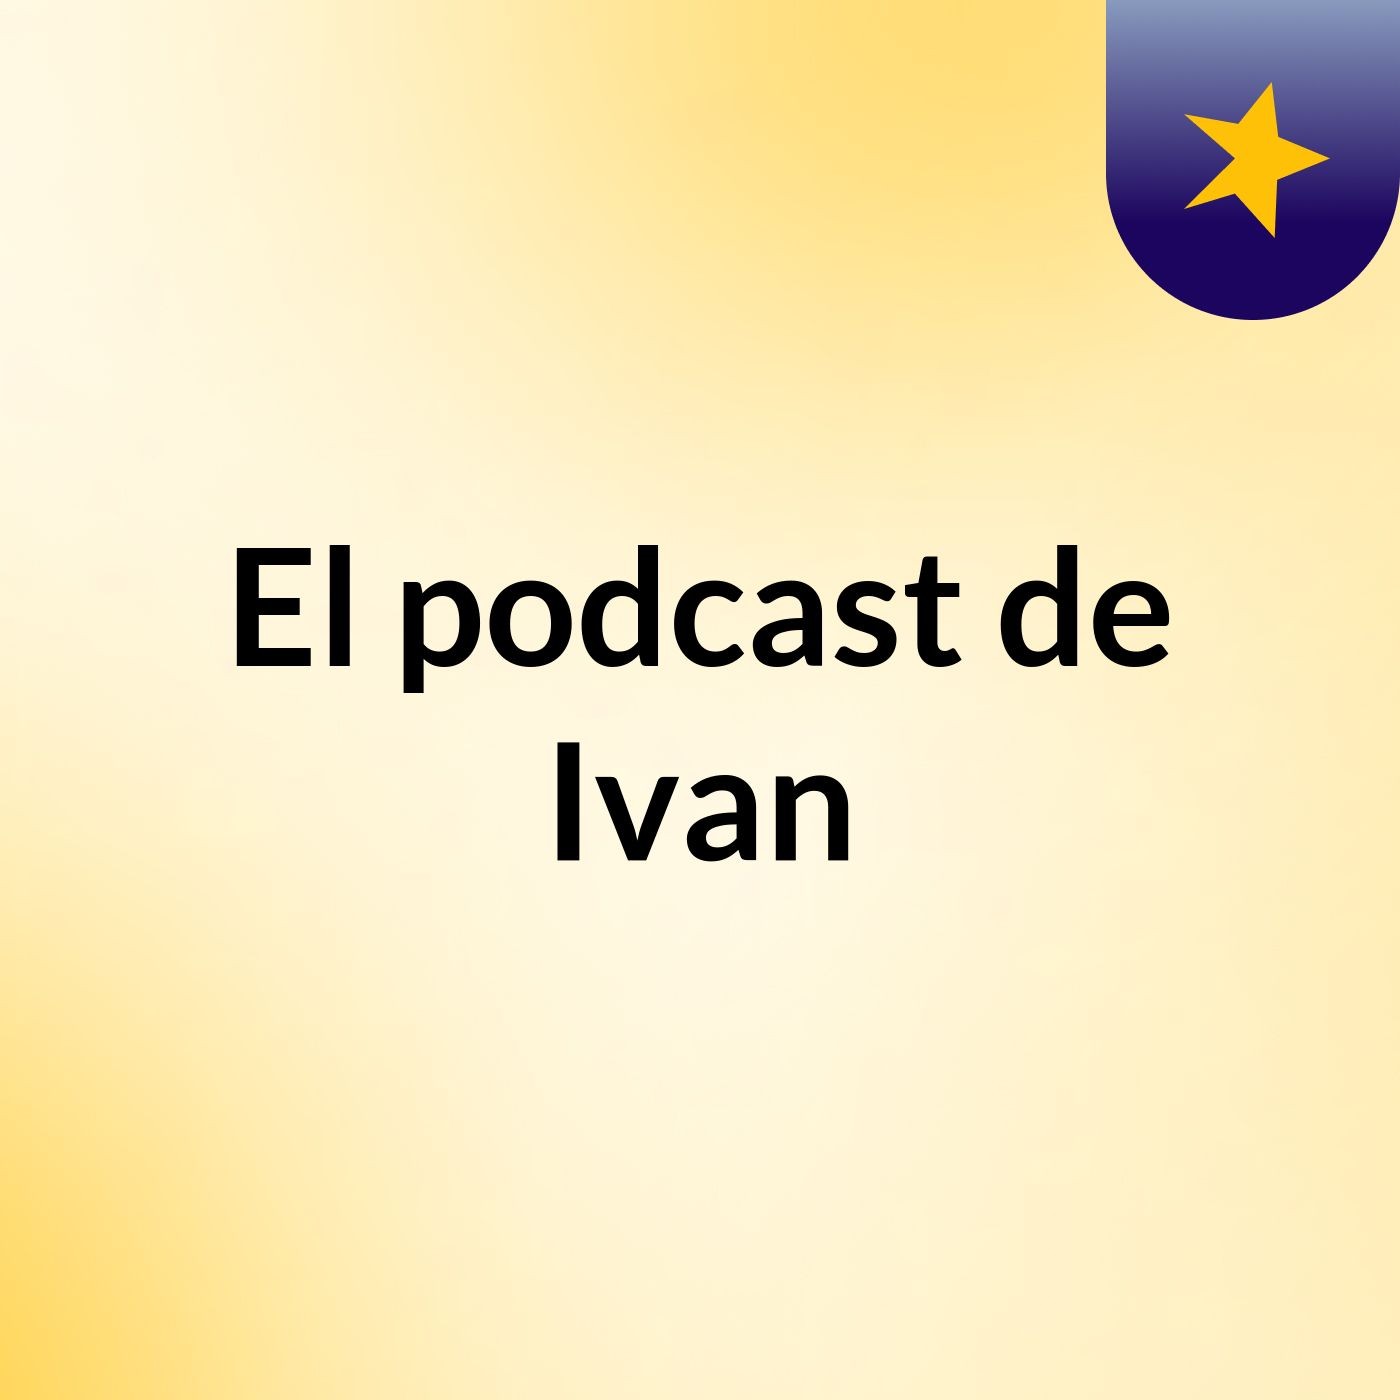 El podcast de Ivan